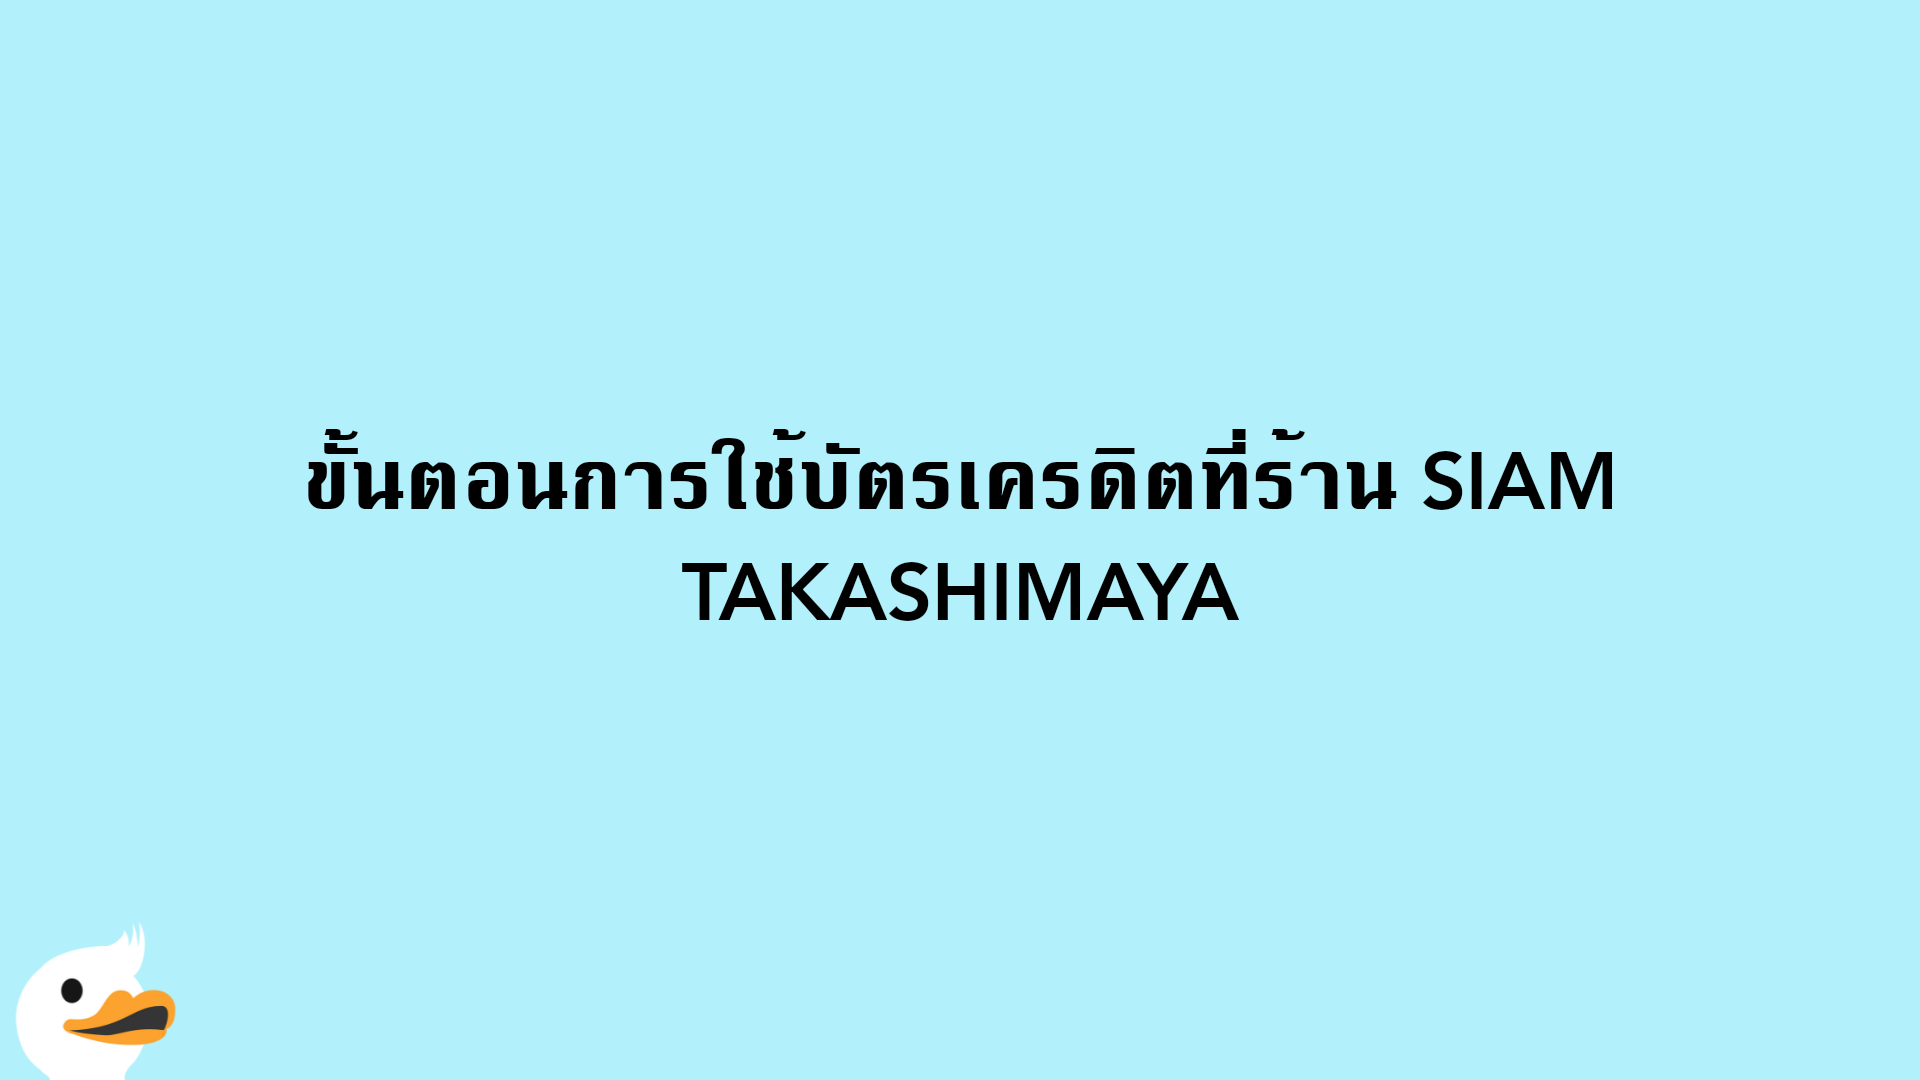 ขั้นตอนการใช้บัตรเครดิตที่ร้าน SIAM TAKASHIMAYA